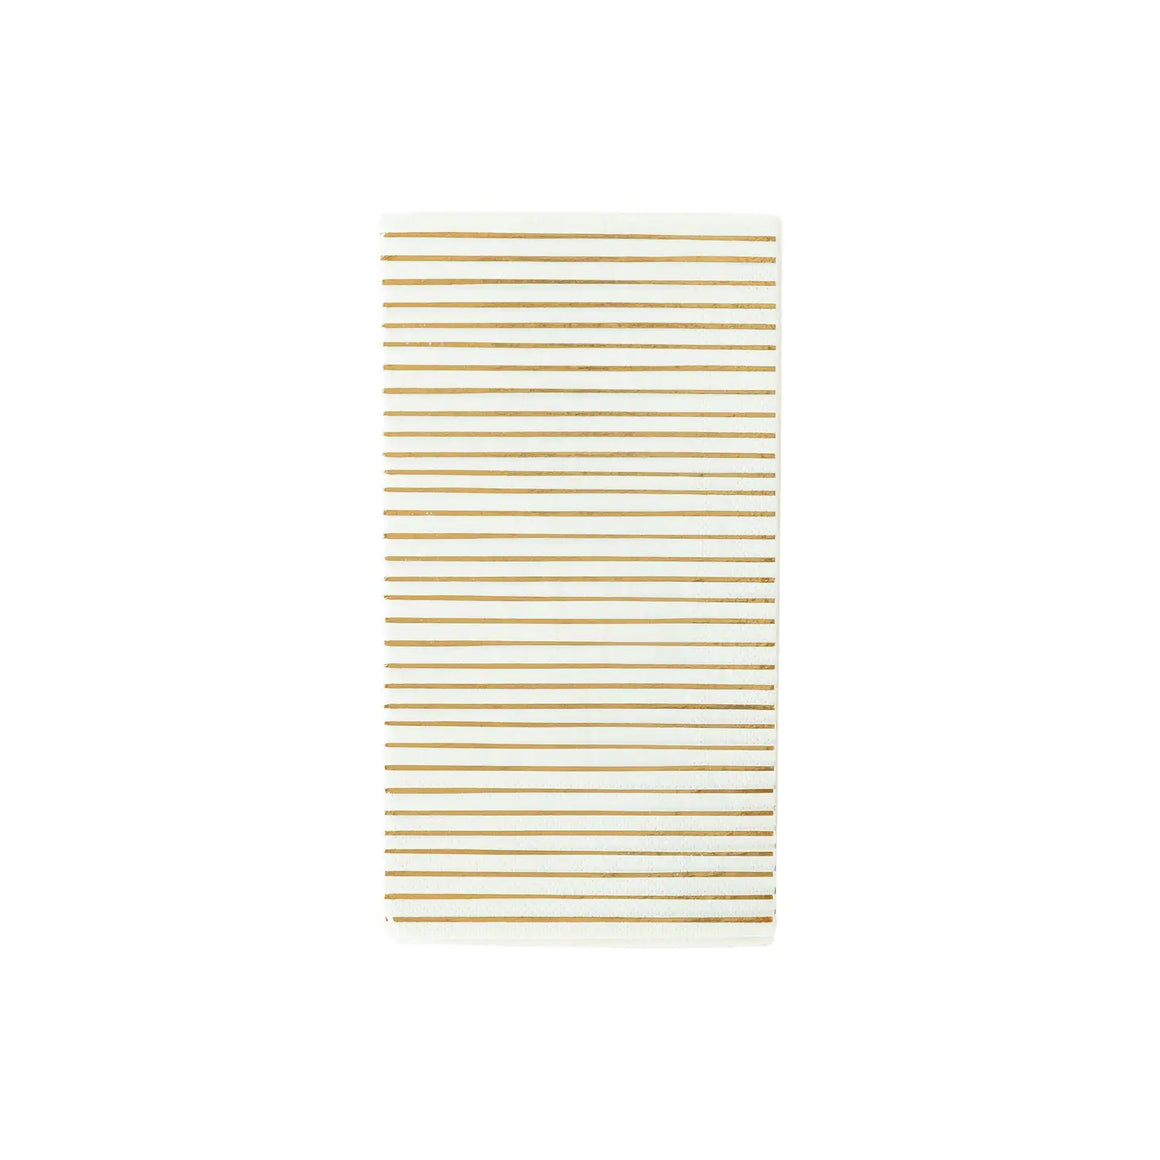 Gold striped dinner napkins